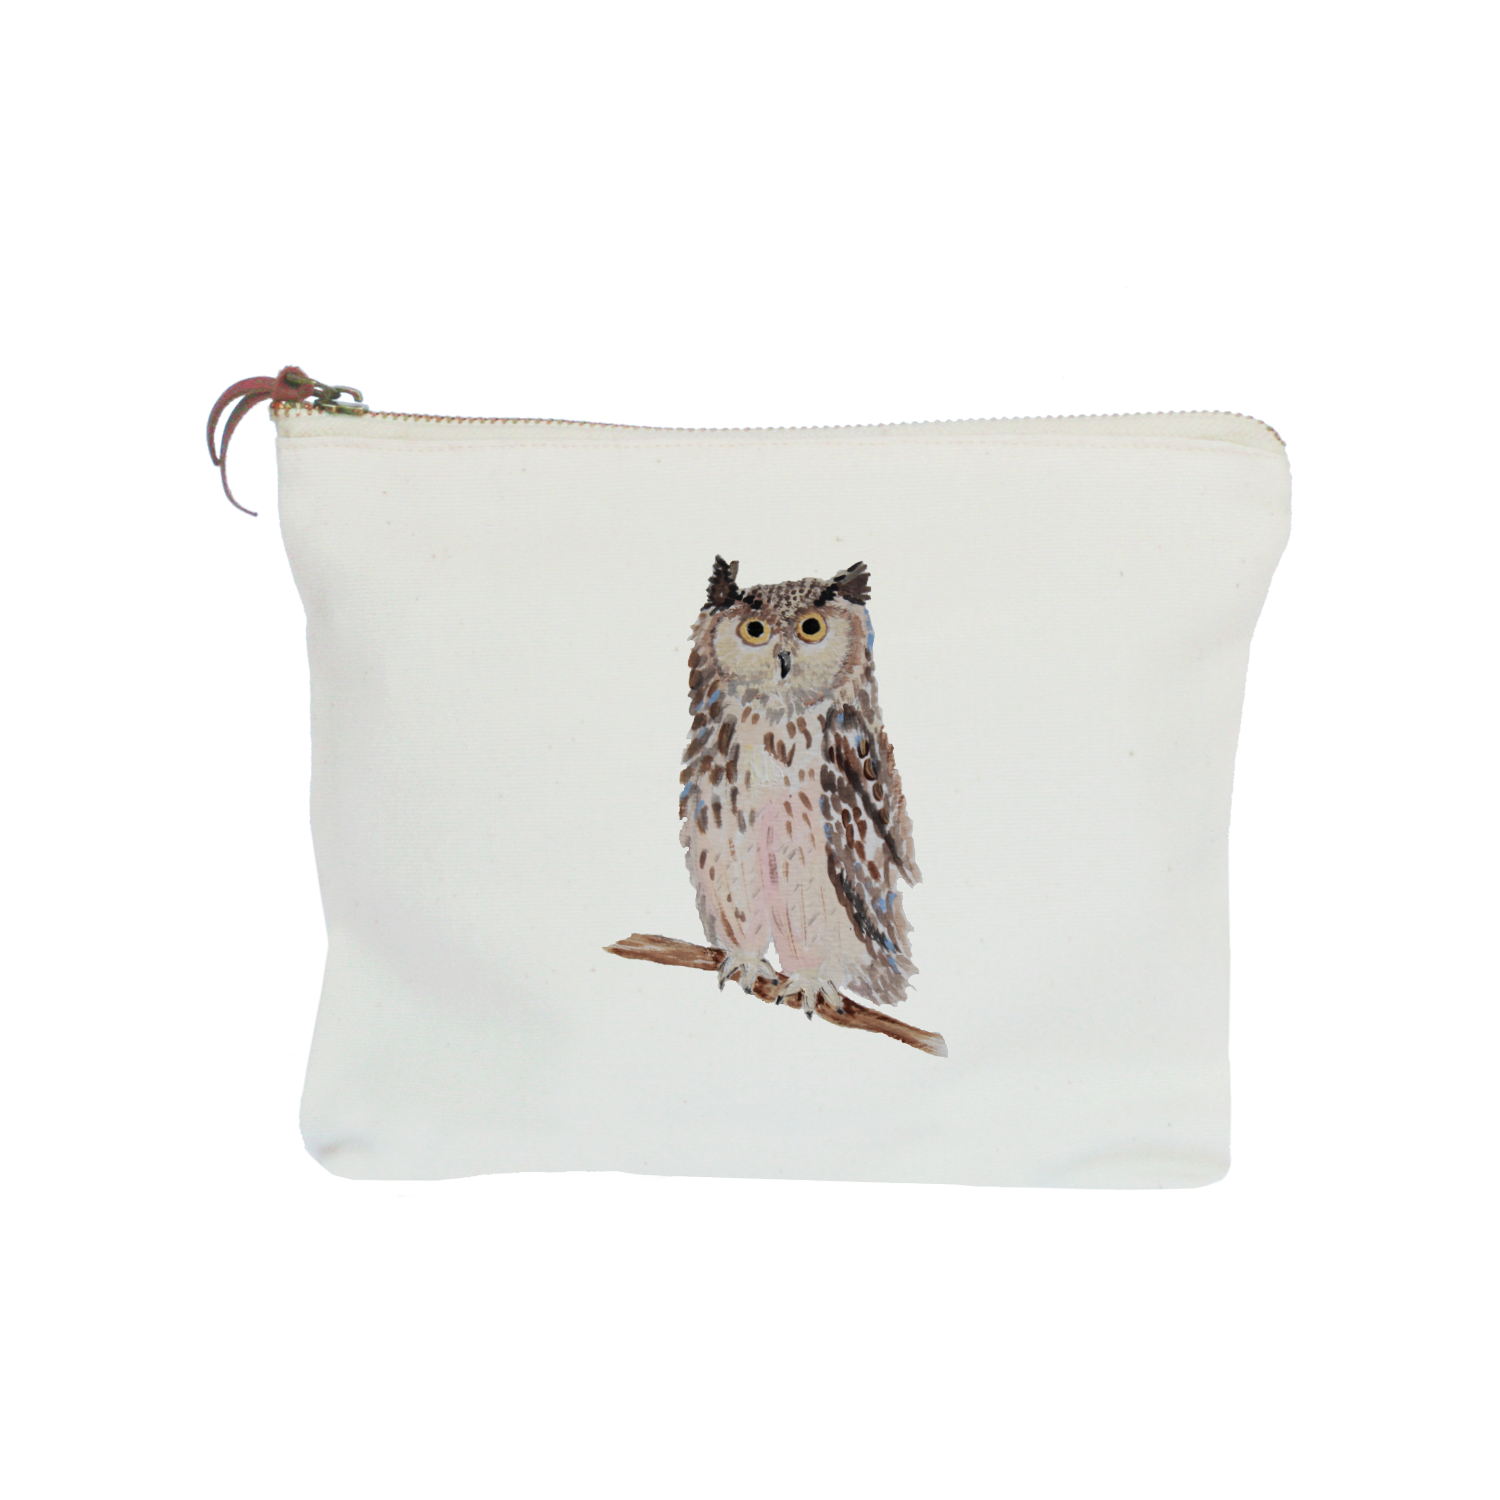 owl zipper pouch